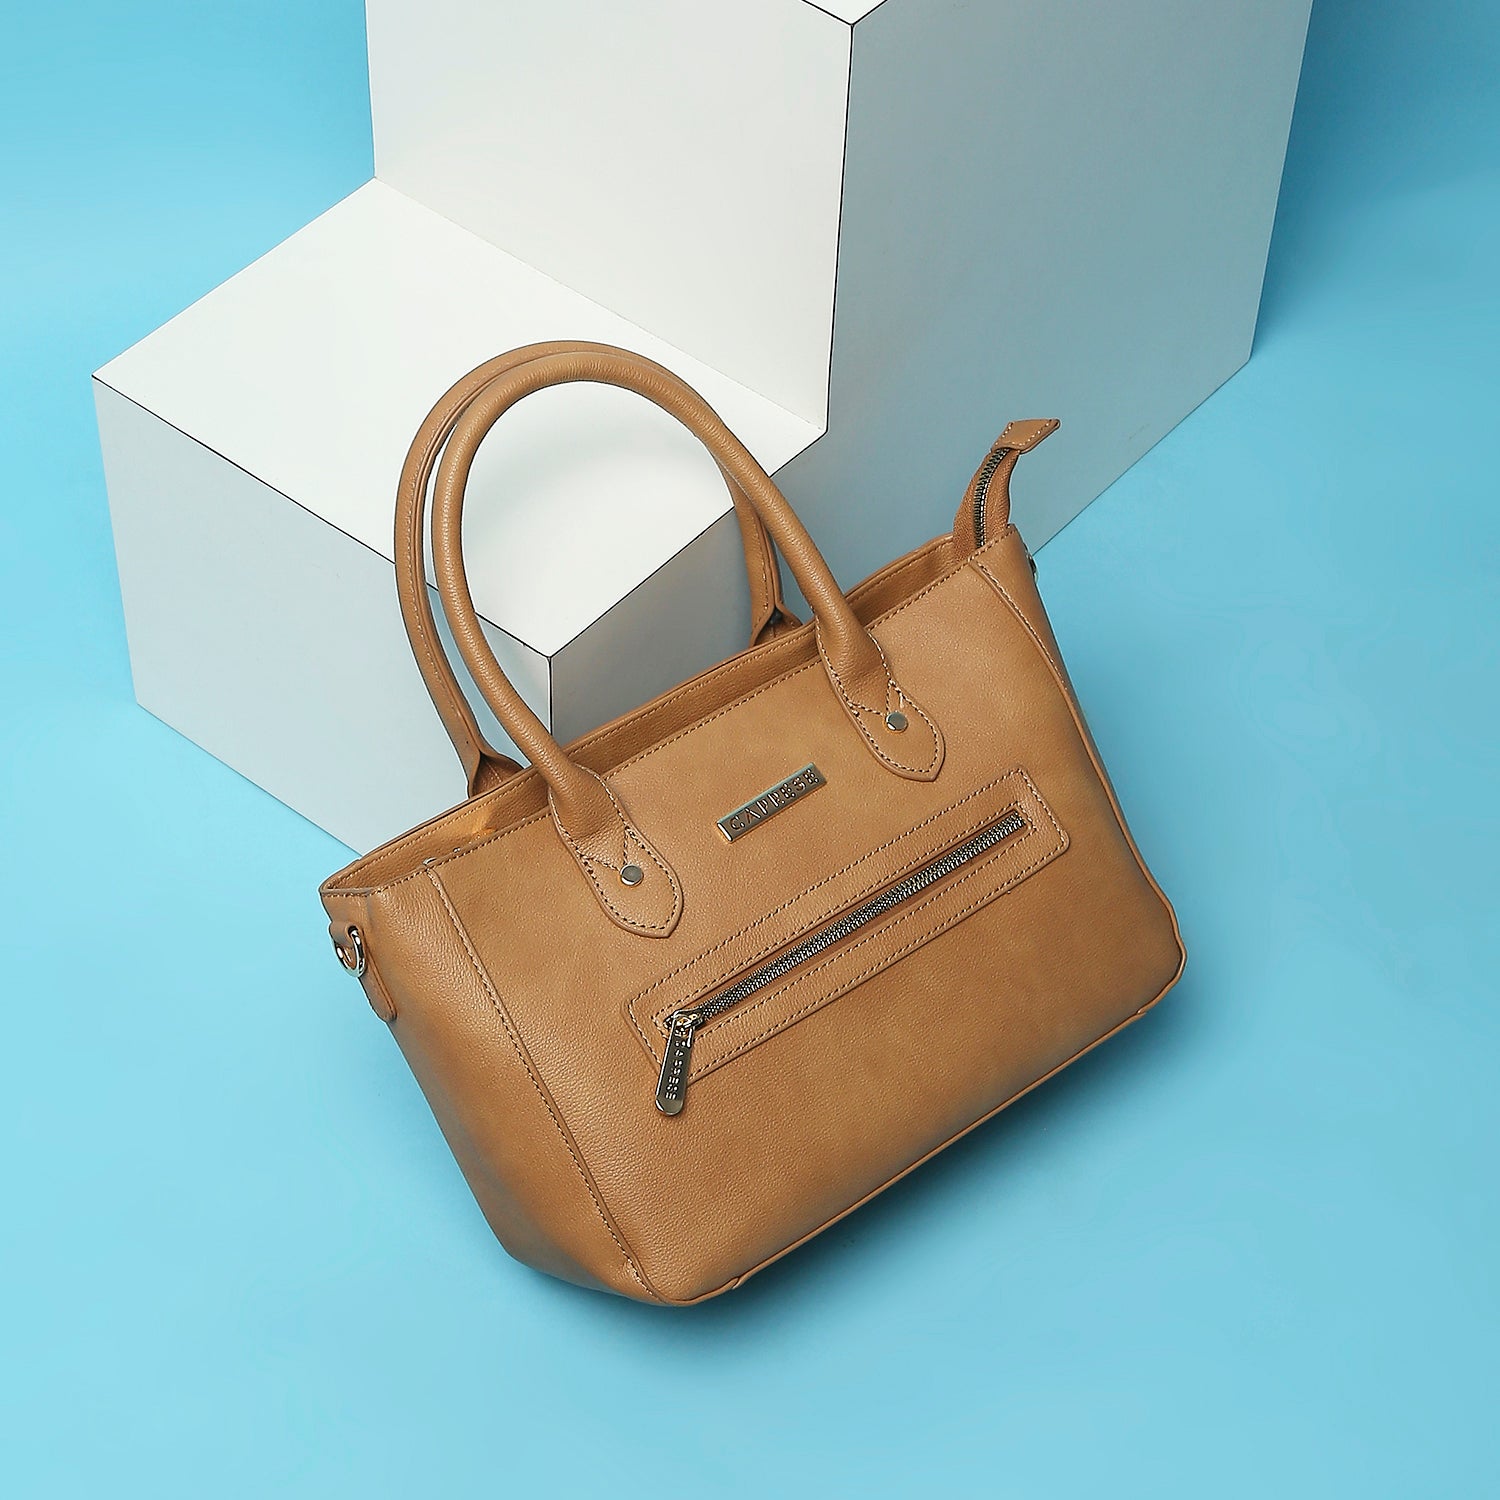 Buy Online Caprese Handbags: The Best Deals for Singapore Shoppers -  Kaizenaire